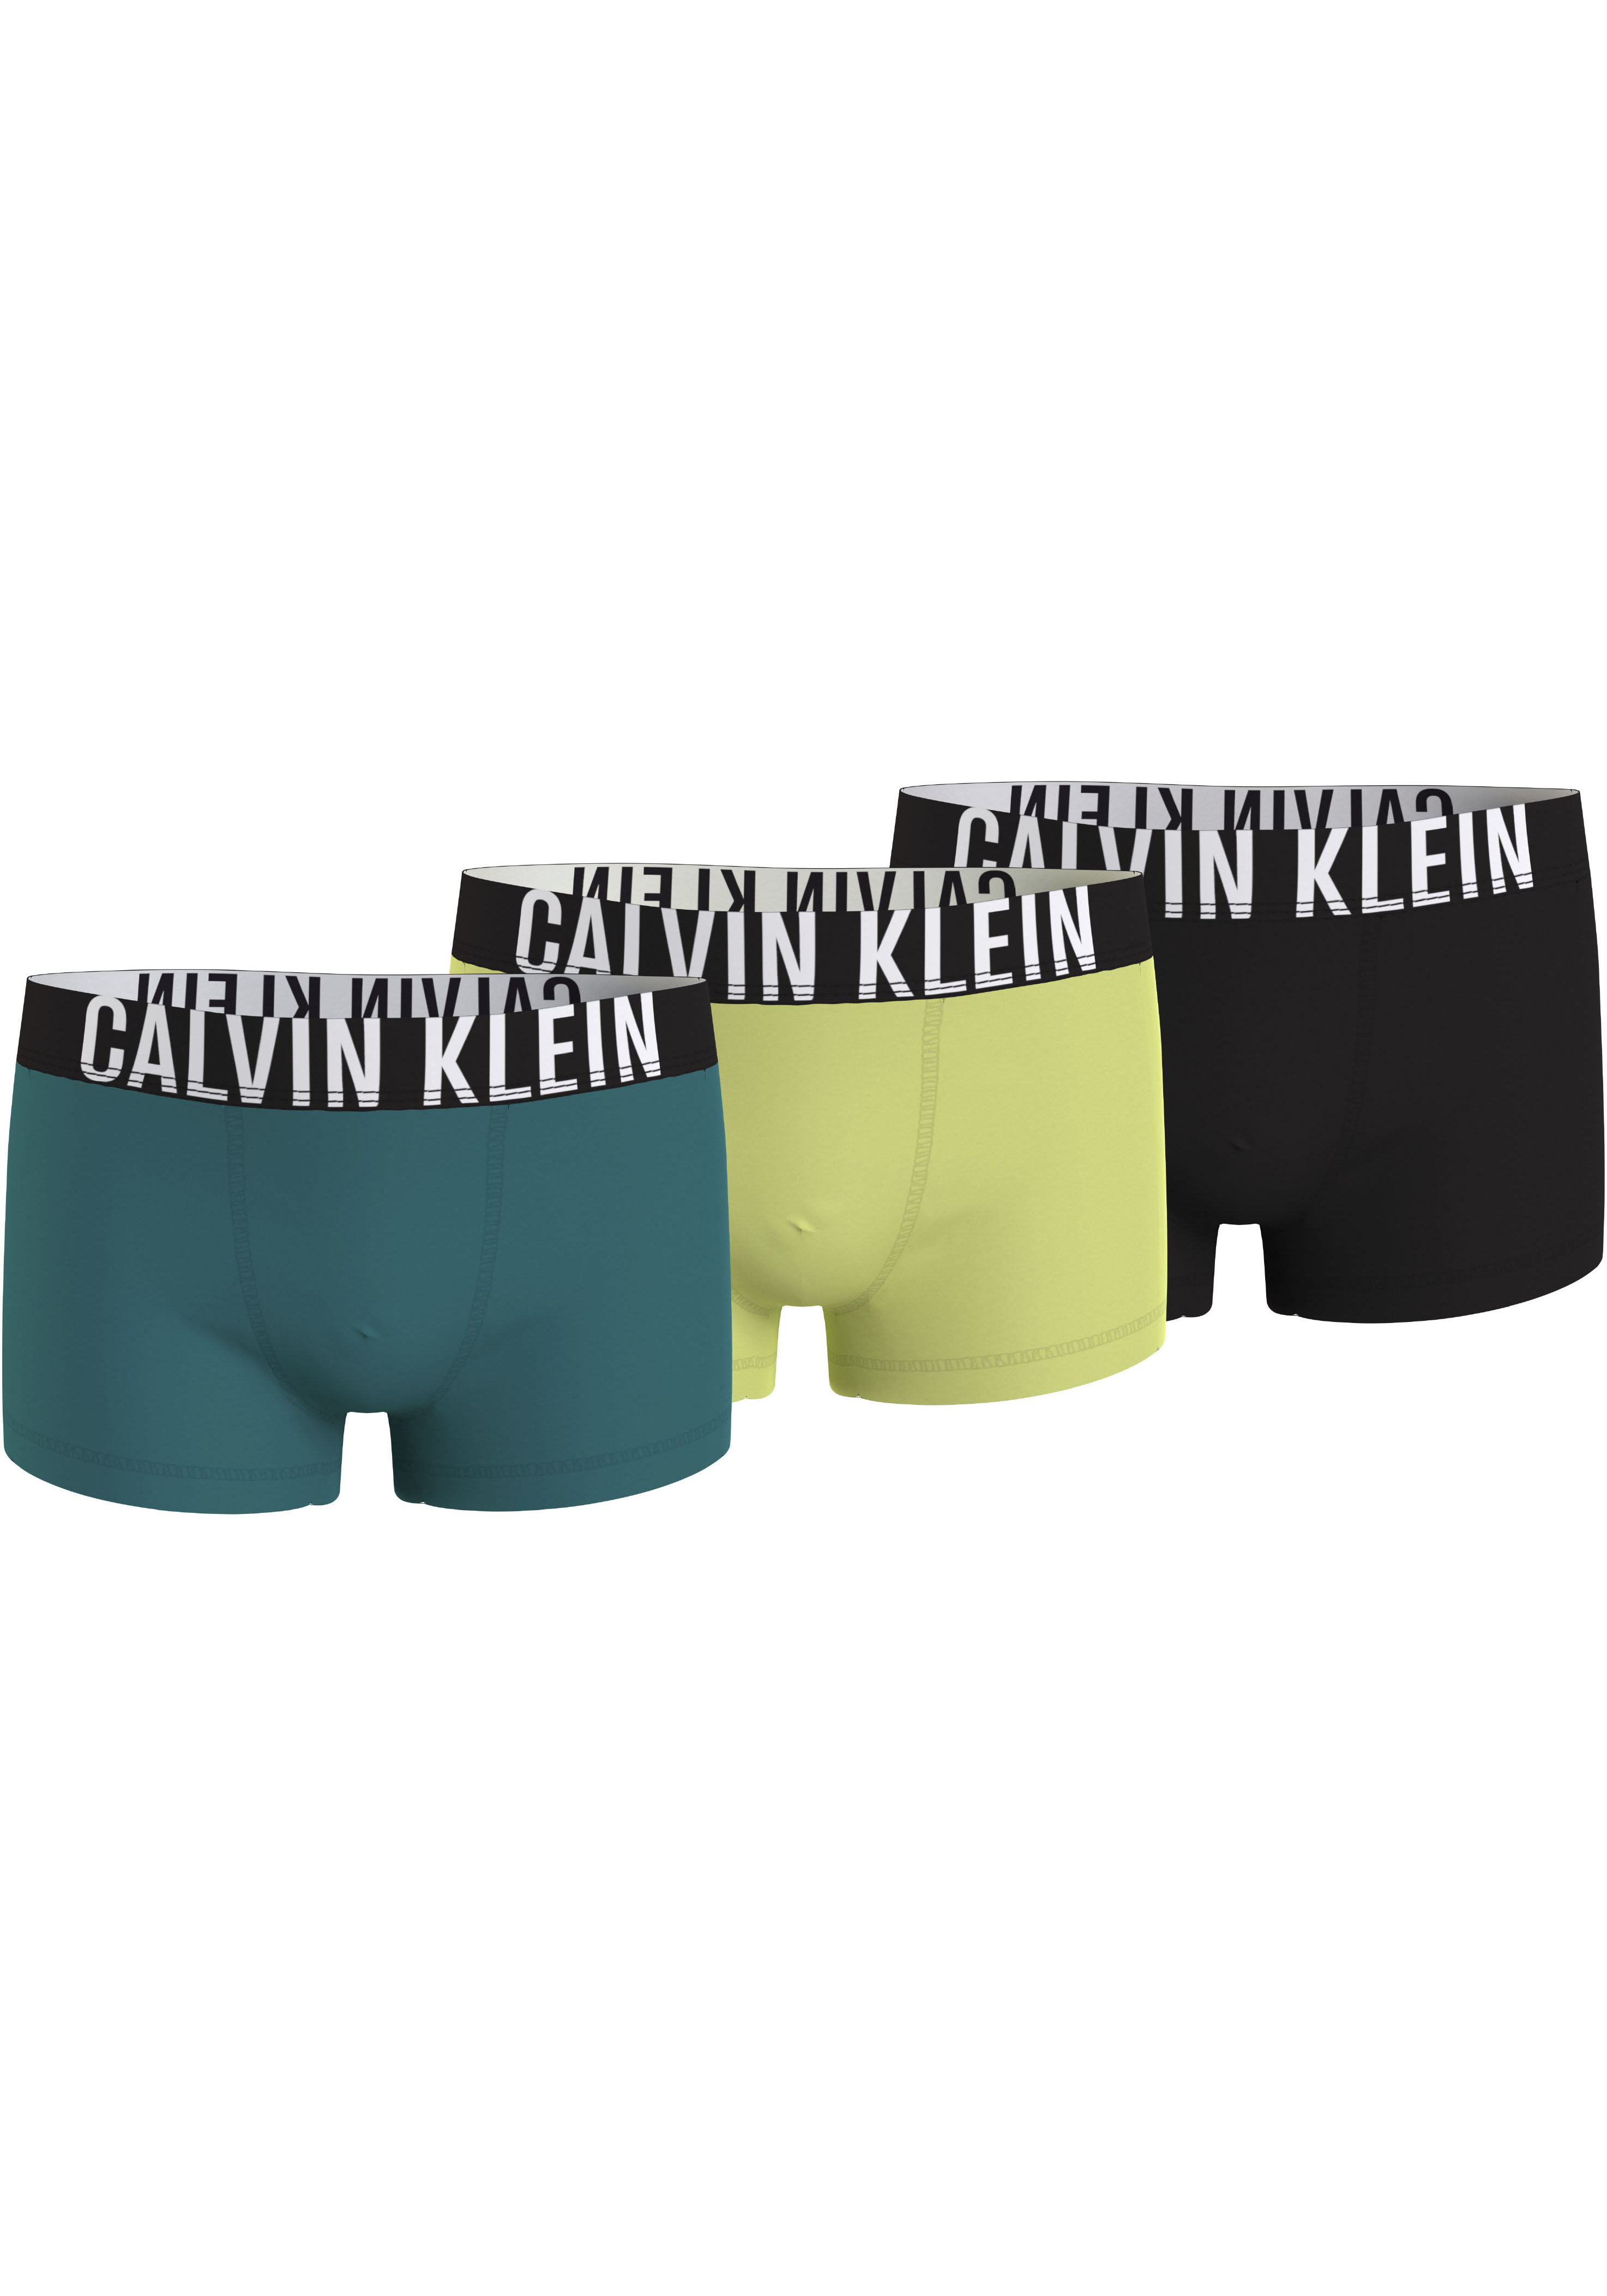 Kinderunterwäsche BAUR Calvin Klein | kaufen